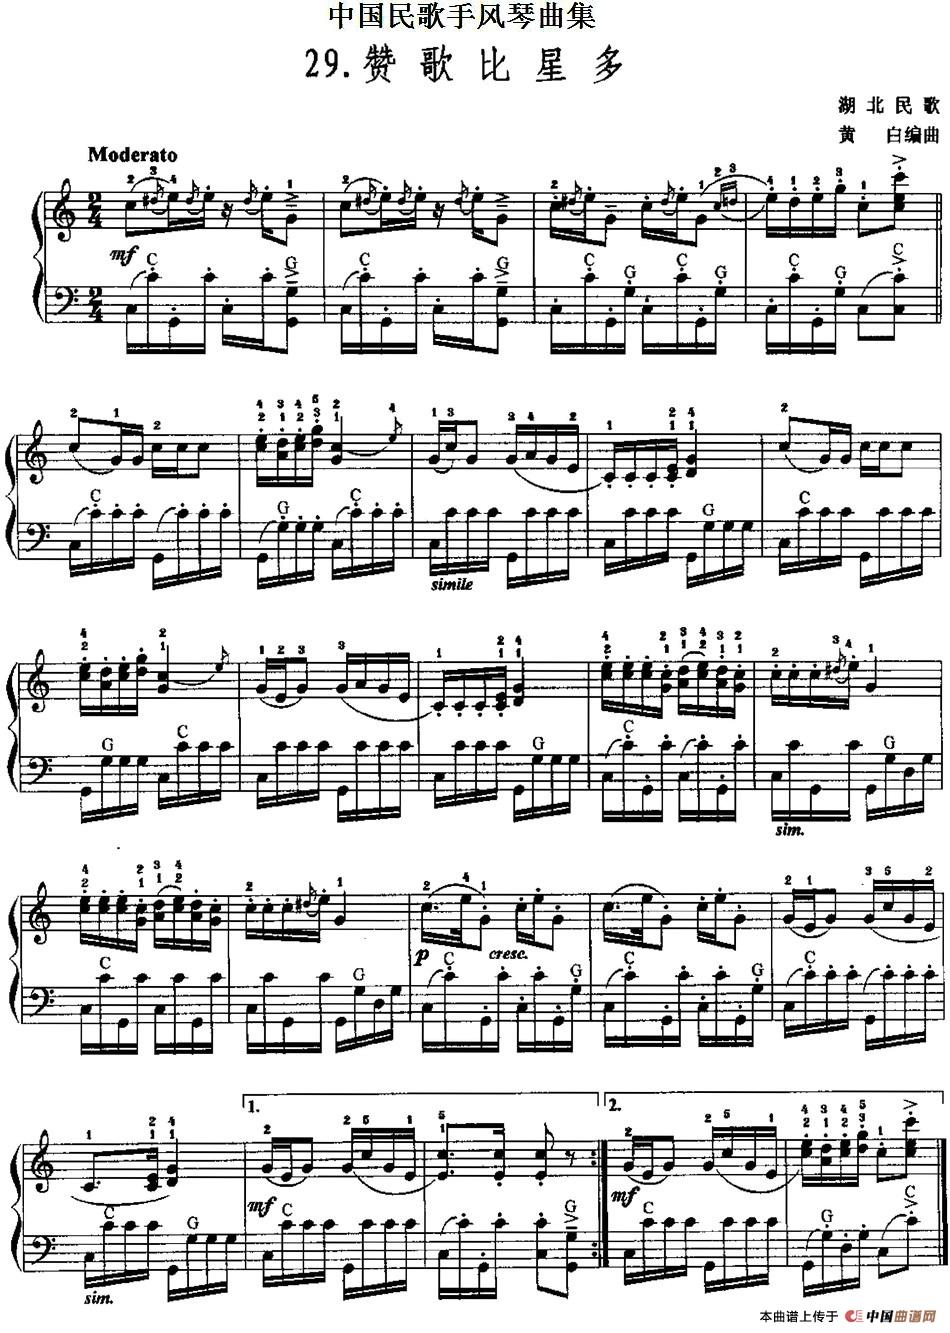 中国民歌手风琴曲集：29、赞歌比星多手风琴谱（线简谱对照、带指法版）